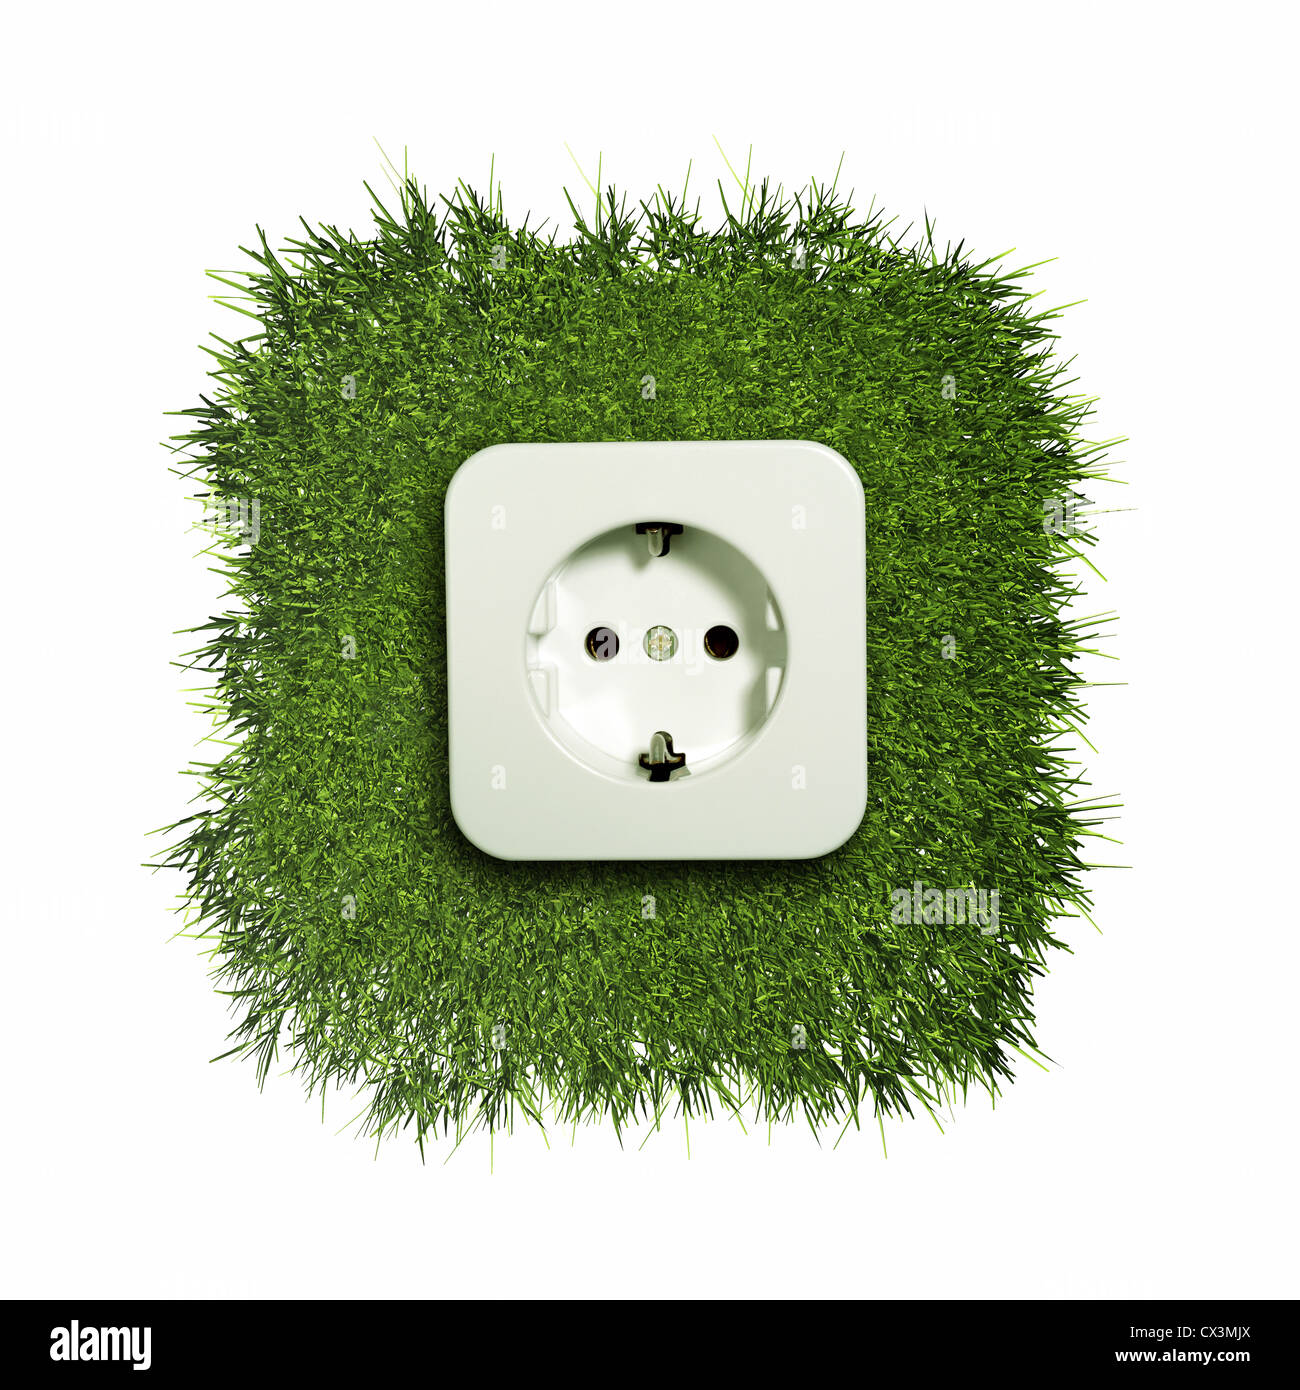 outlet point on green gras - Steckdose wächst auf einem grünen Rasenstück - Stock Photo